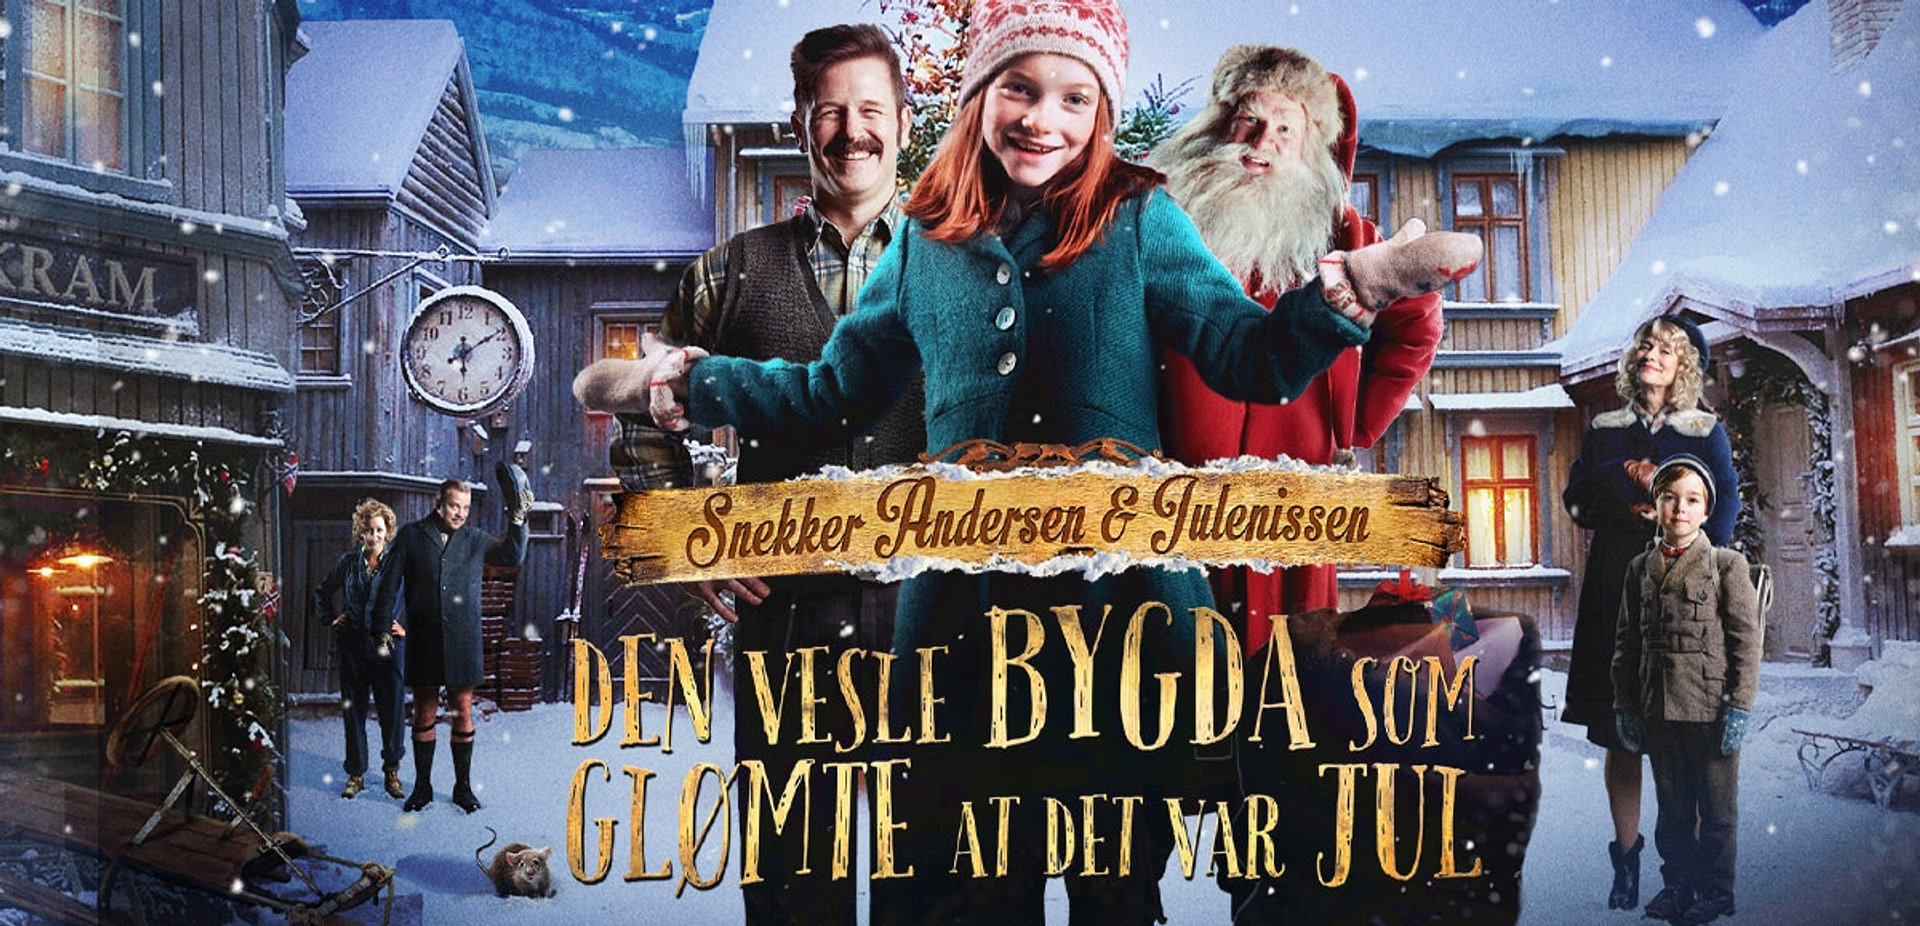 Snekker Andersen og Julenissen: Den vesle bygda som glømte at det var jul